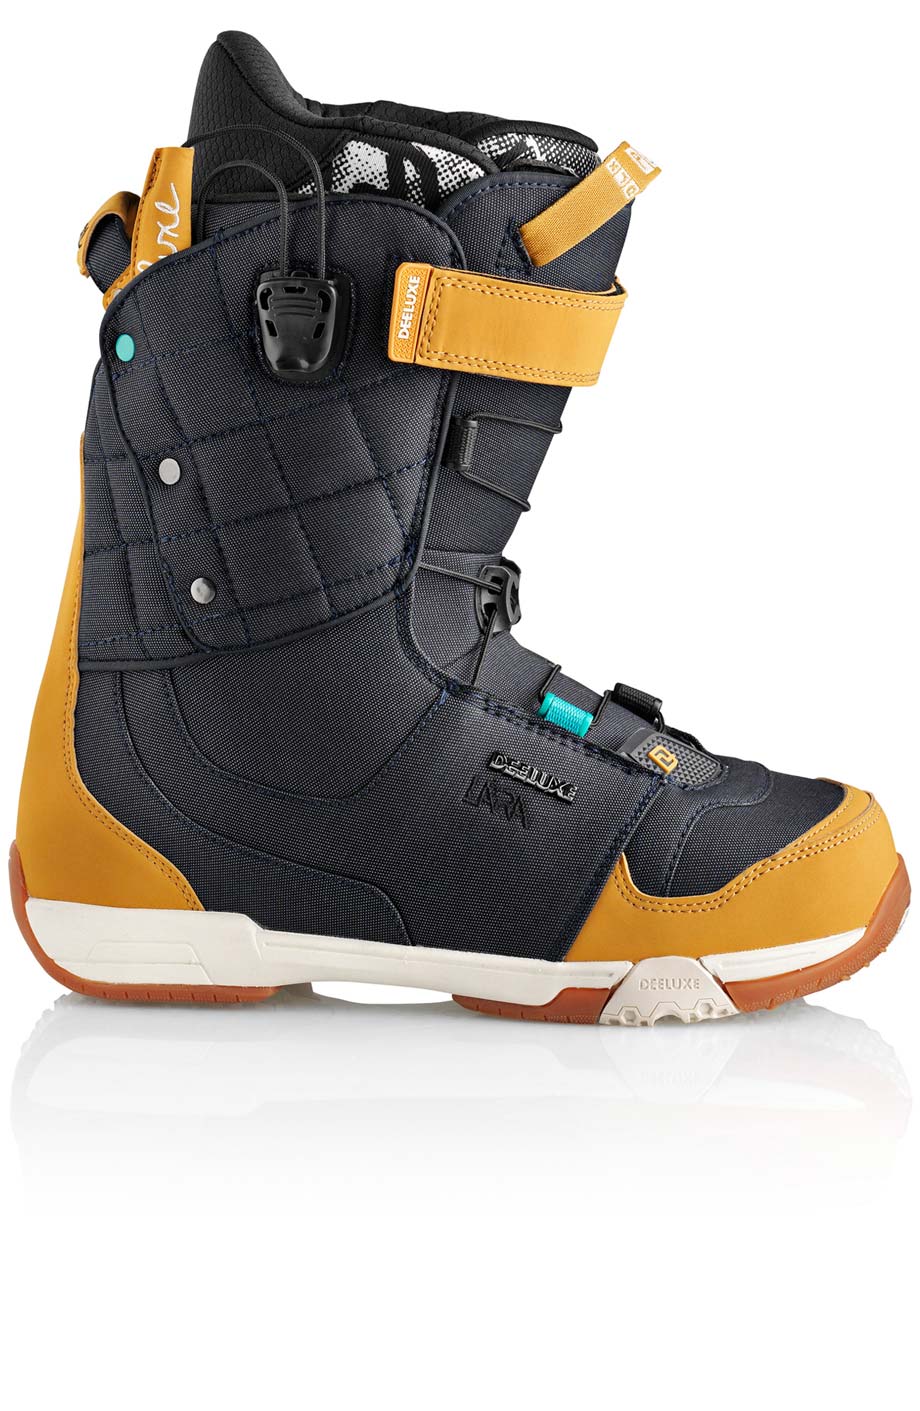 Ботинки сноубордические Deeluxe Ray Lara  размер 23,0 denim (темный джинс + беж кож.зам) 2013 год